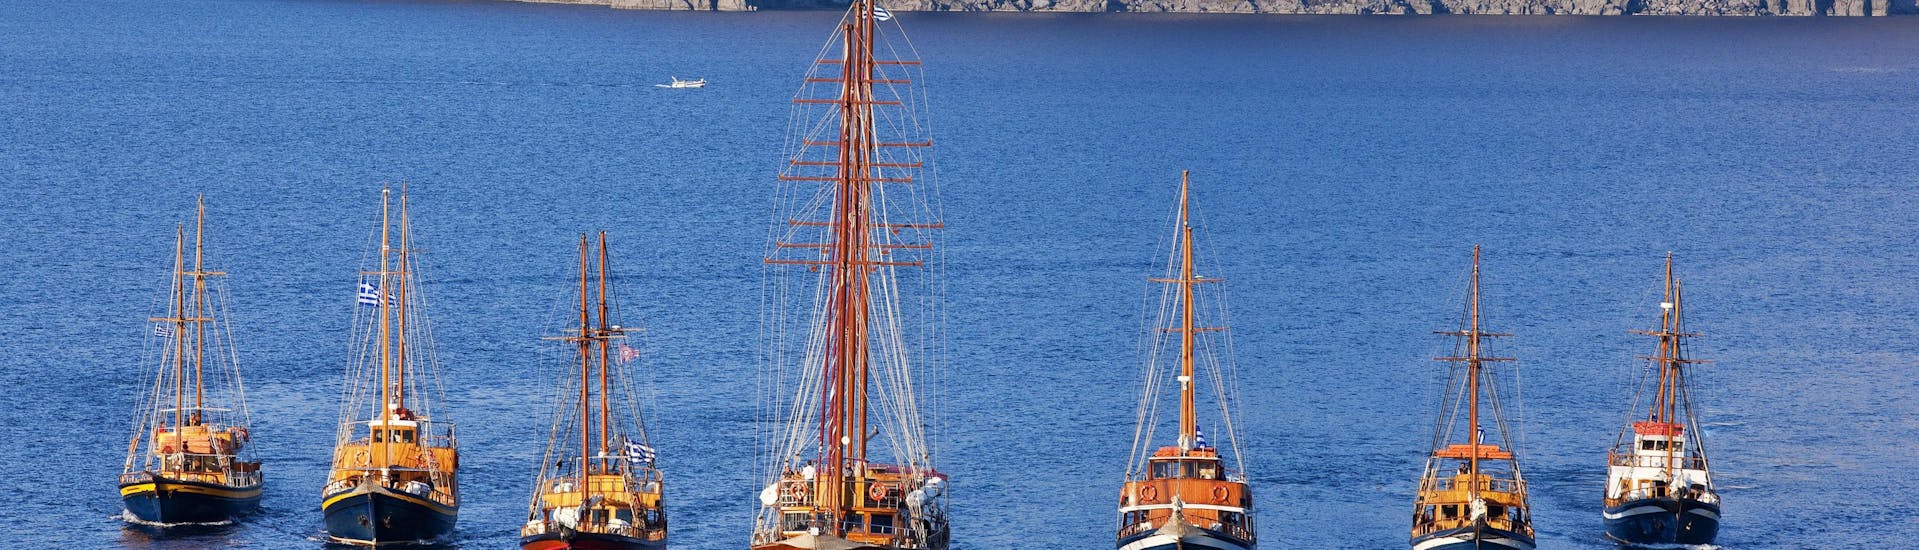 La flota de barcos disponible para el viaje en velero al atardecer desde Santorini hasta el Volcán con Caldera's Boats Santorini.